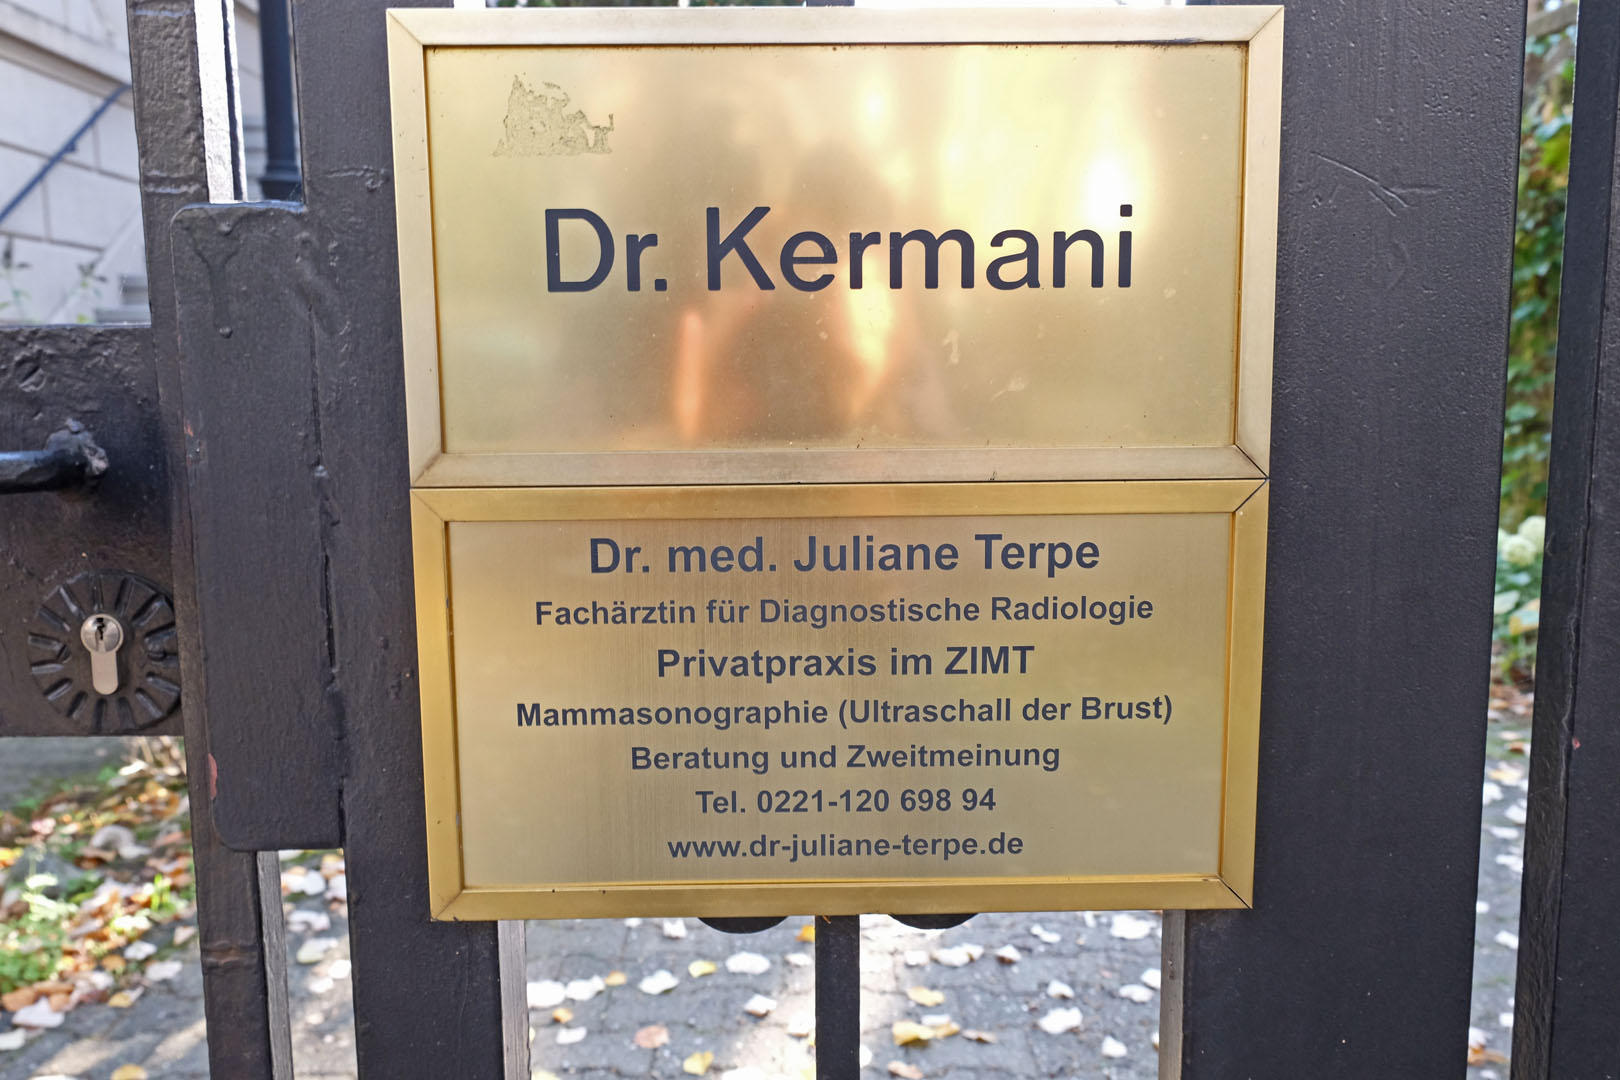 Dr. med. Juliane Terpe - Mammasonographie, Beratung und Zweitmeinung, Herwarthstraße 17 in Köln